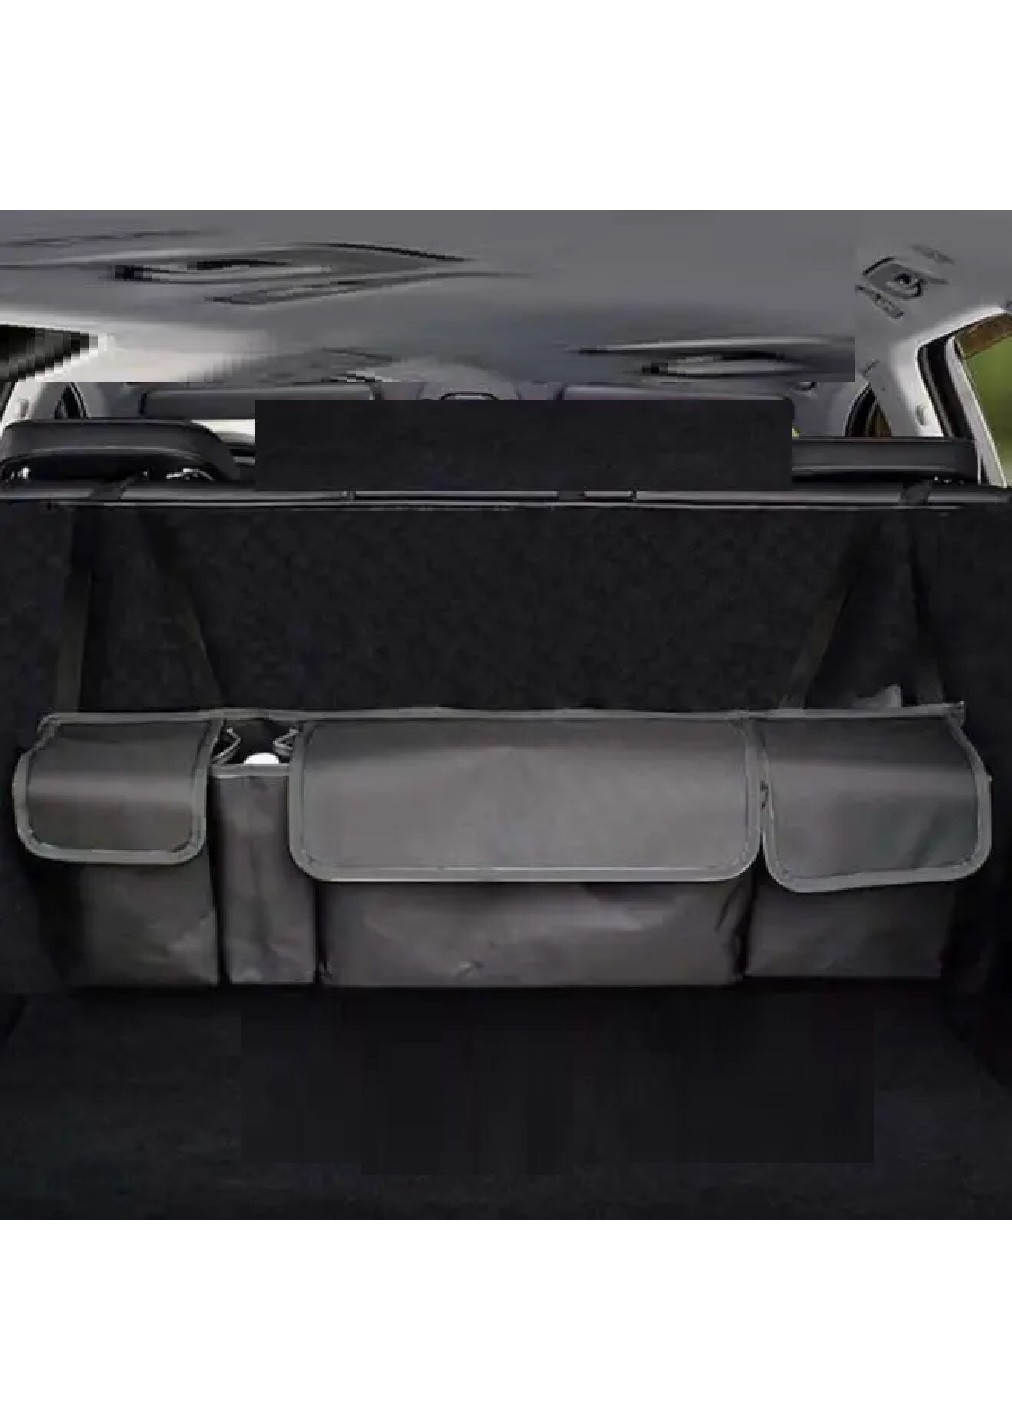 Автомобильный подвесной компактный органайзер на спинку сидения для багажника 90х25 см (474967-Prob) Темно-серая окантовка Unbranded (260517424)